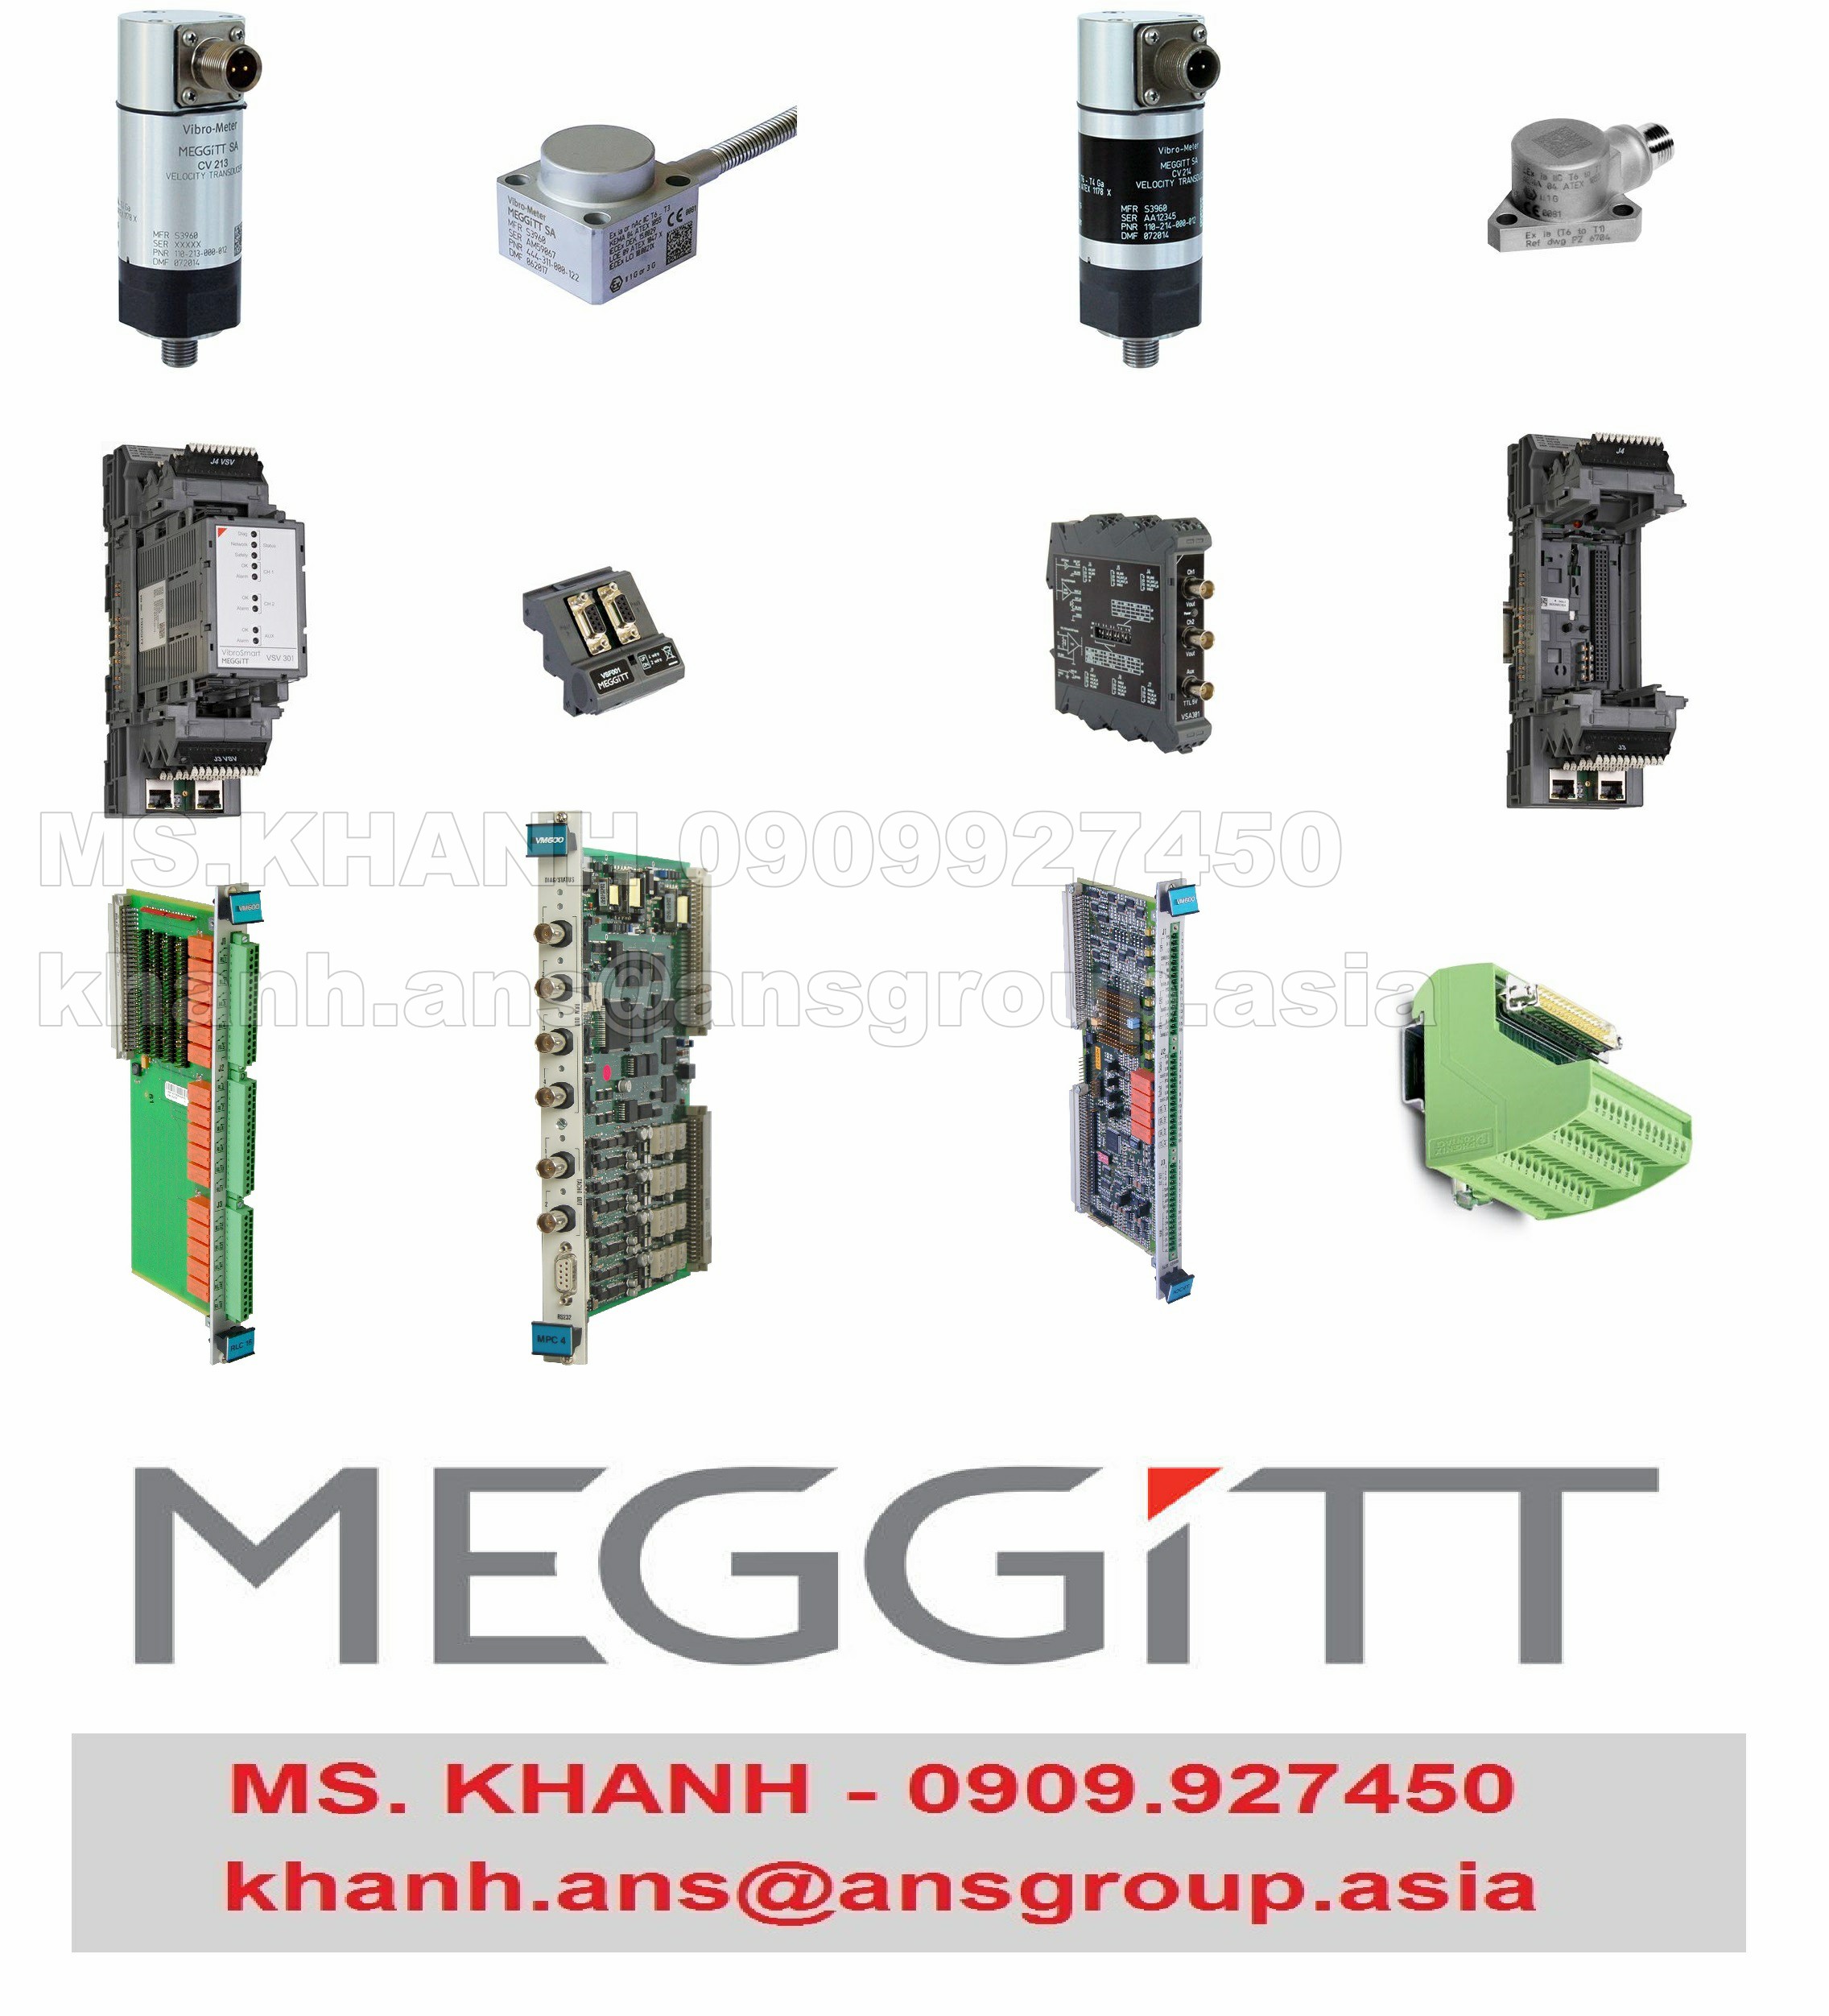 the-200-560-000-1hh-input-output-card-for-mpc4-ioc-4t-meggitt-vietnam.png